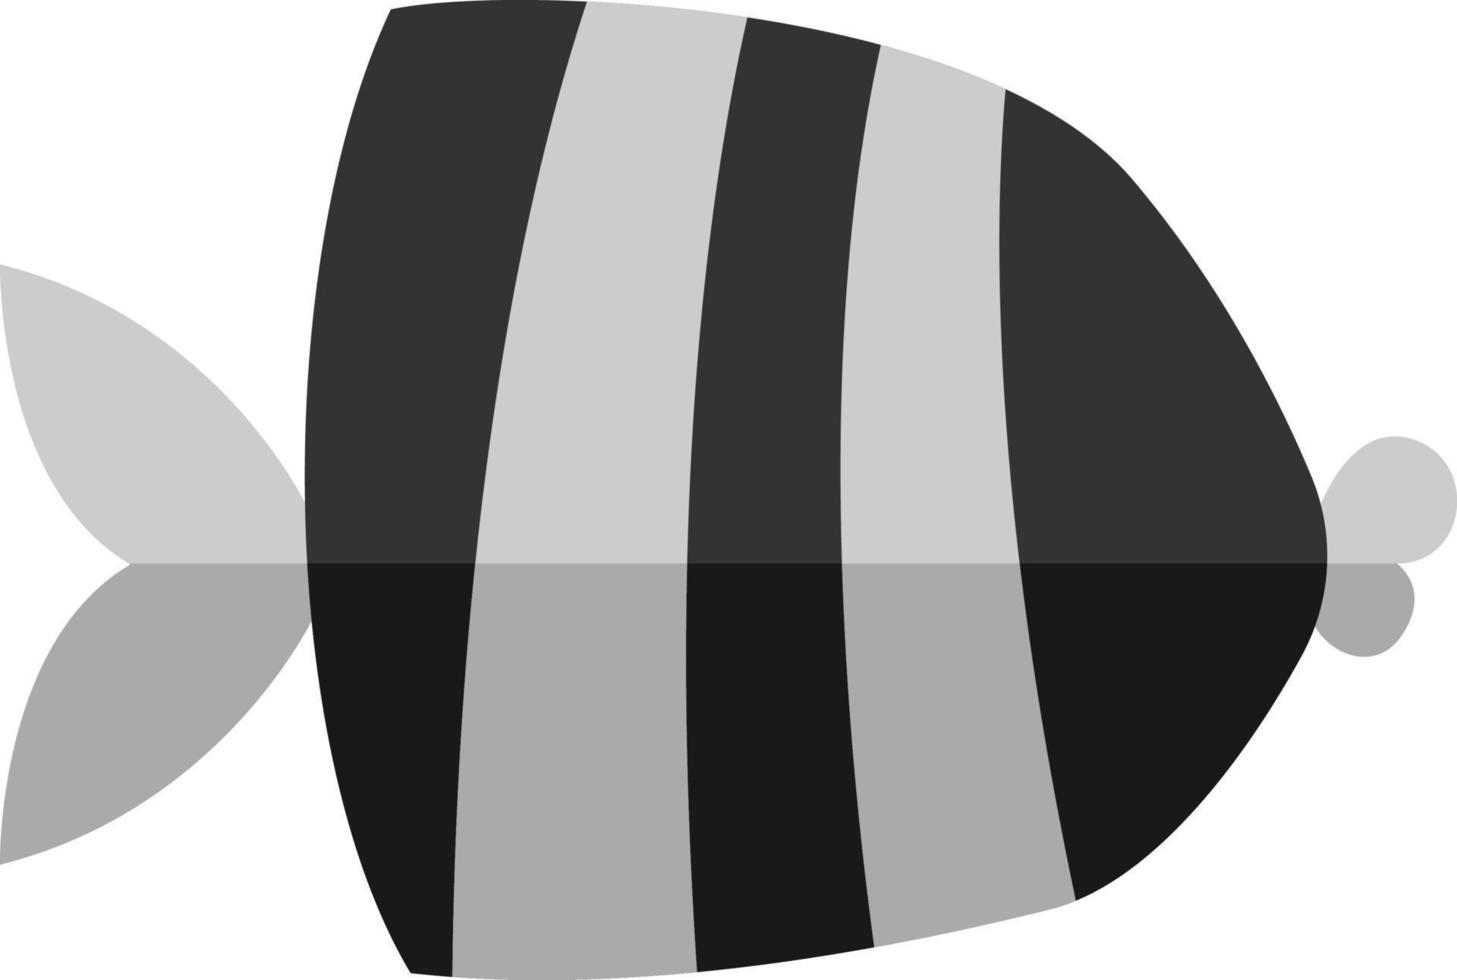 poisson noir avec deux bandes grises, illustration, vecteur sur fond blanc.